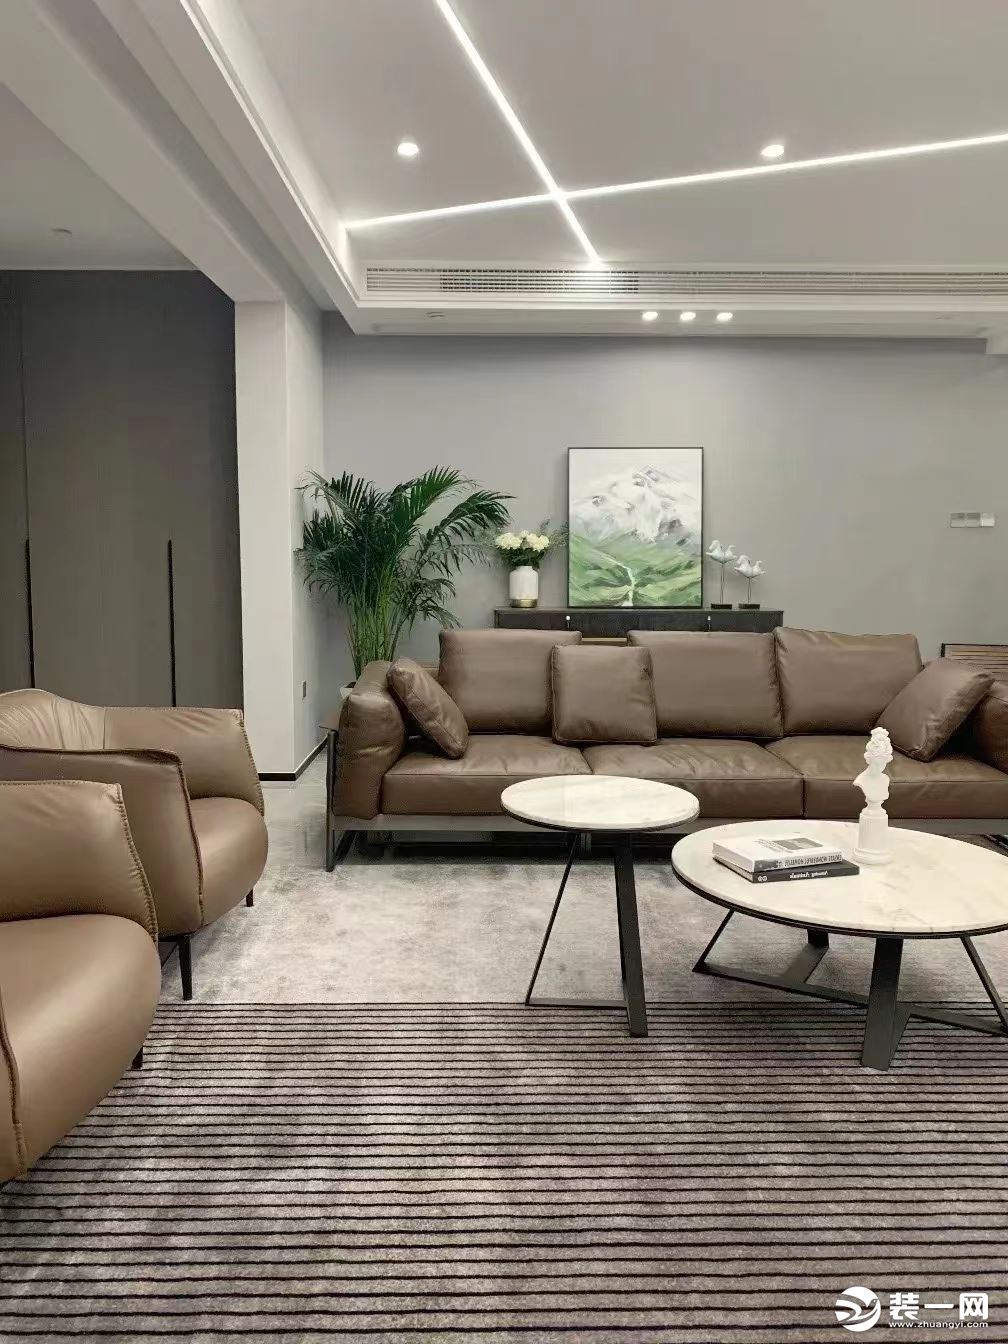 整体现代舒适的空间，布置上舒适自然的沙发后，显得更加高级大气。